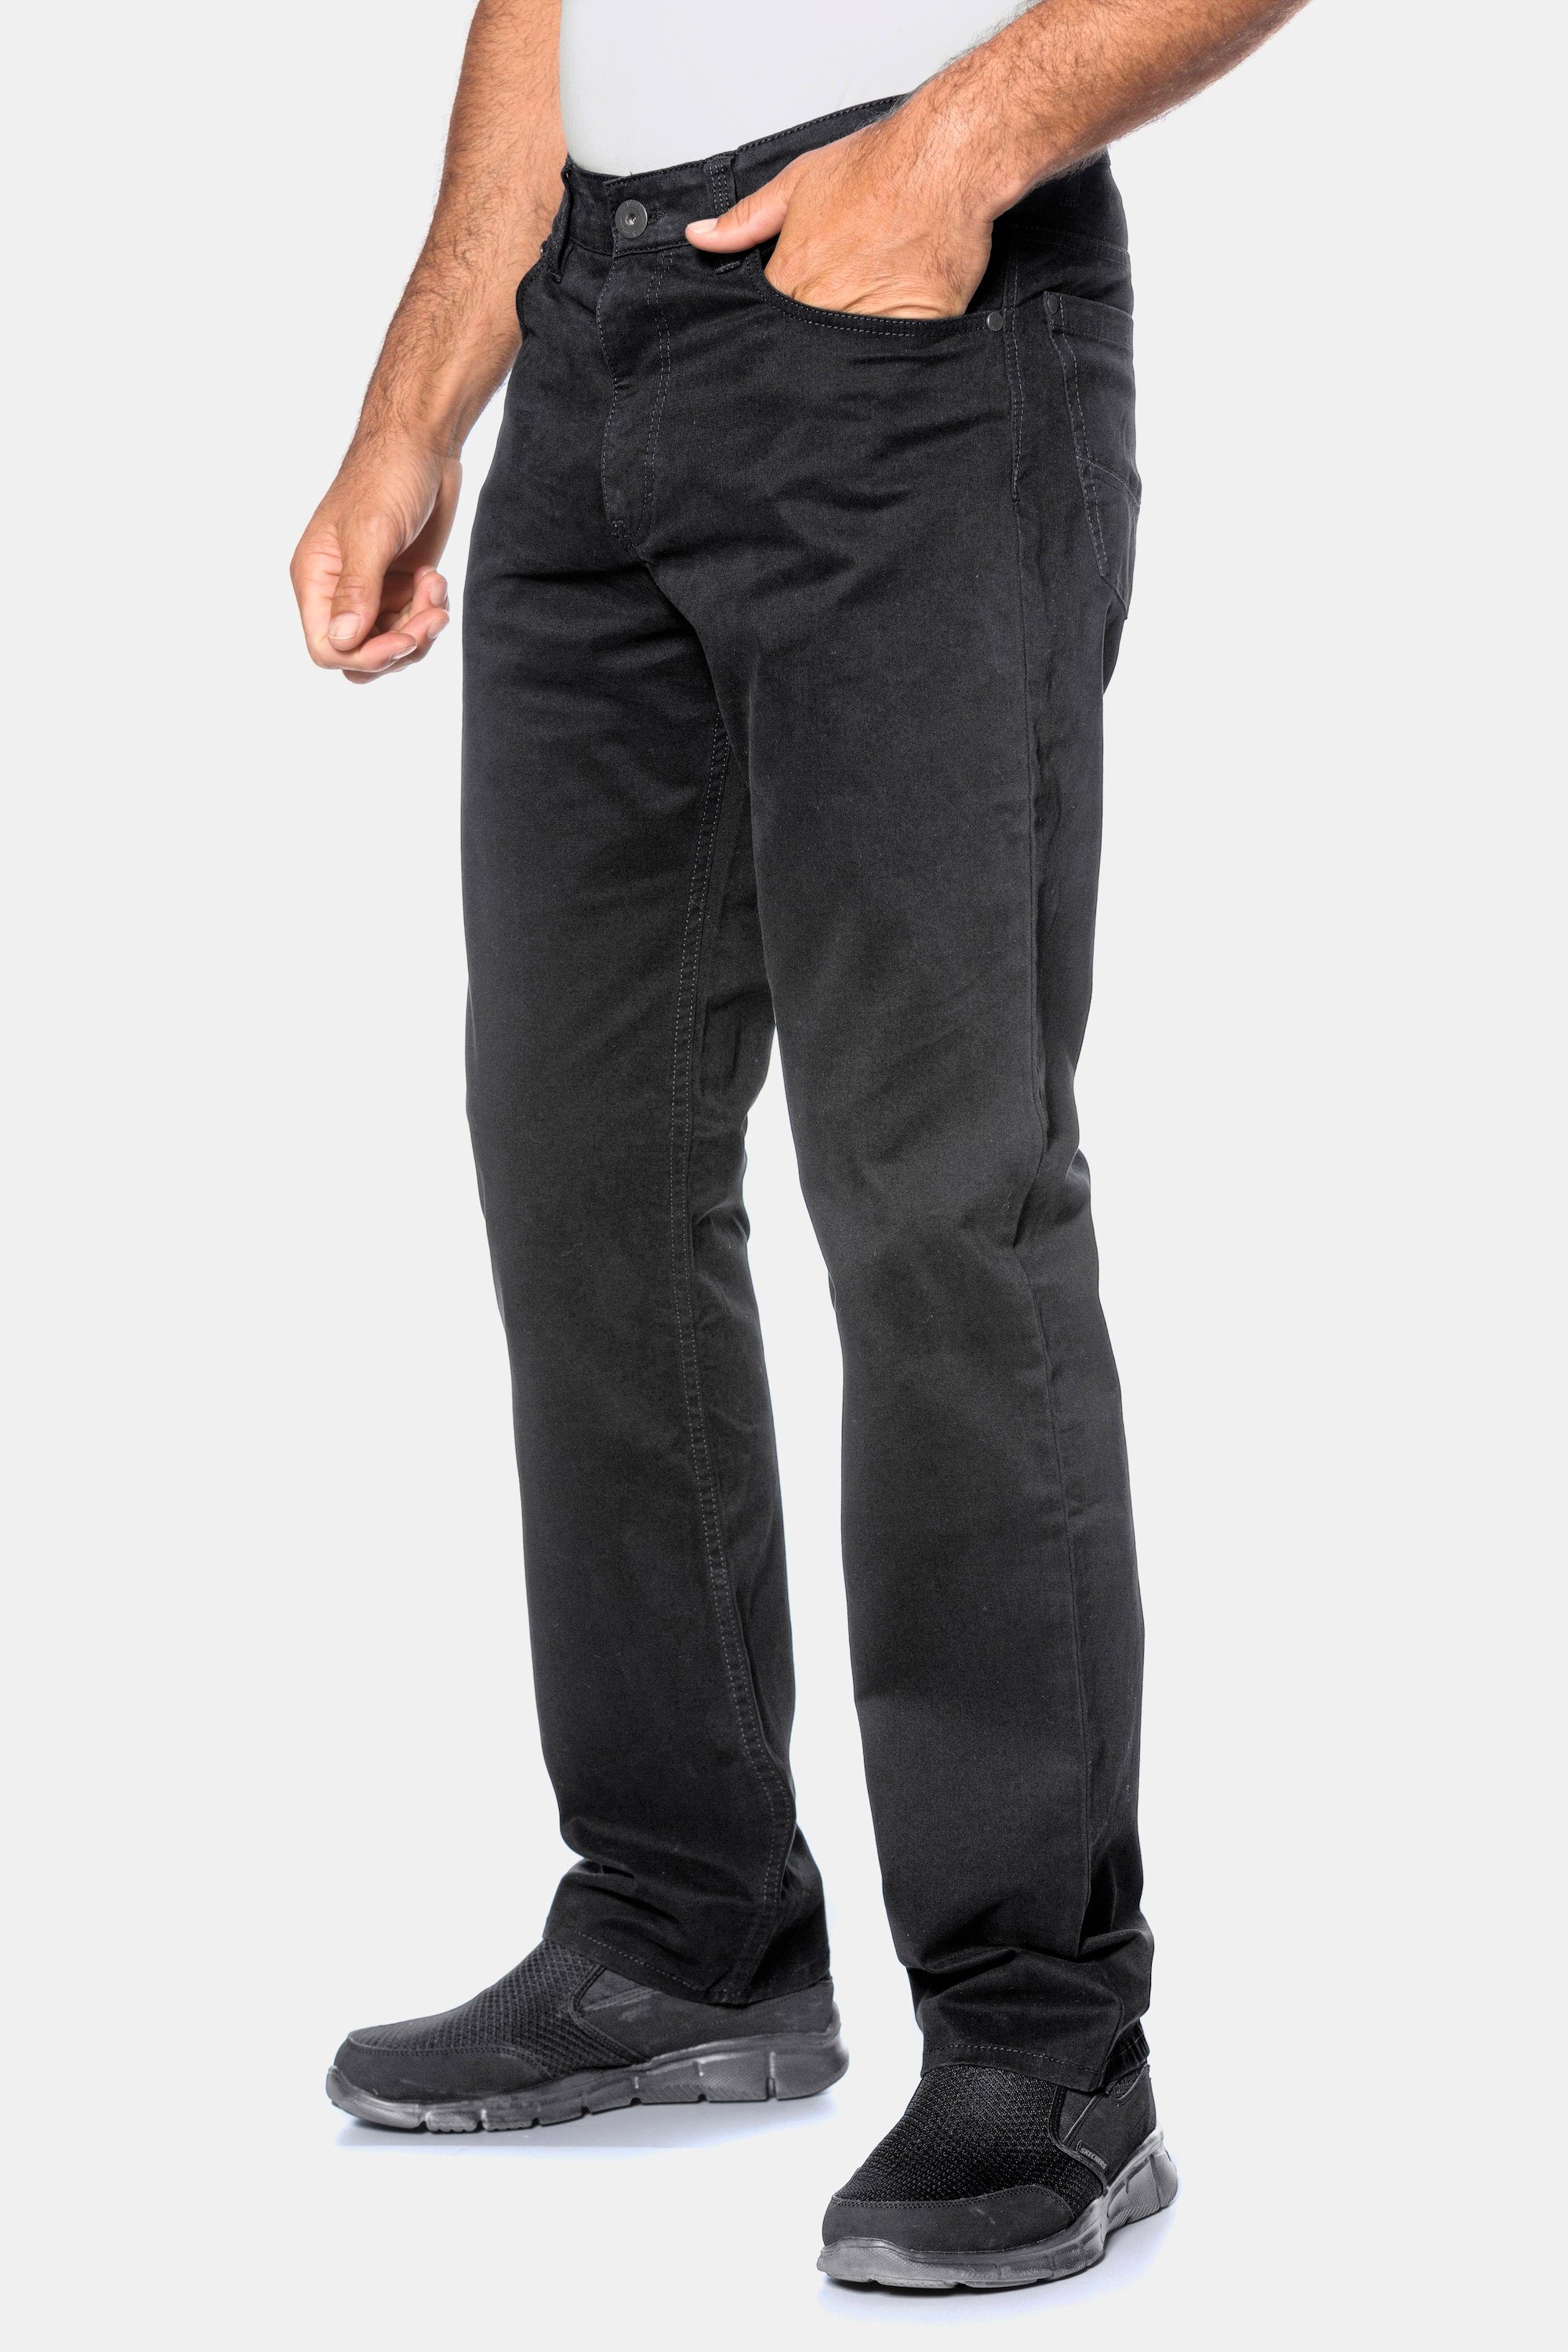 Twillhose Superblack-Färbung 5-Pocket-Jeans JP1880 Komfortbund